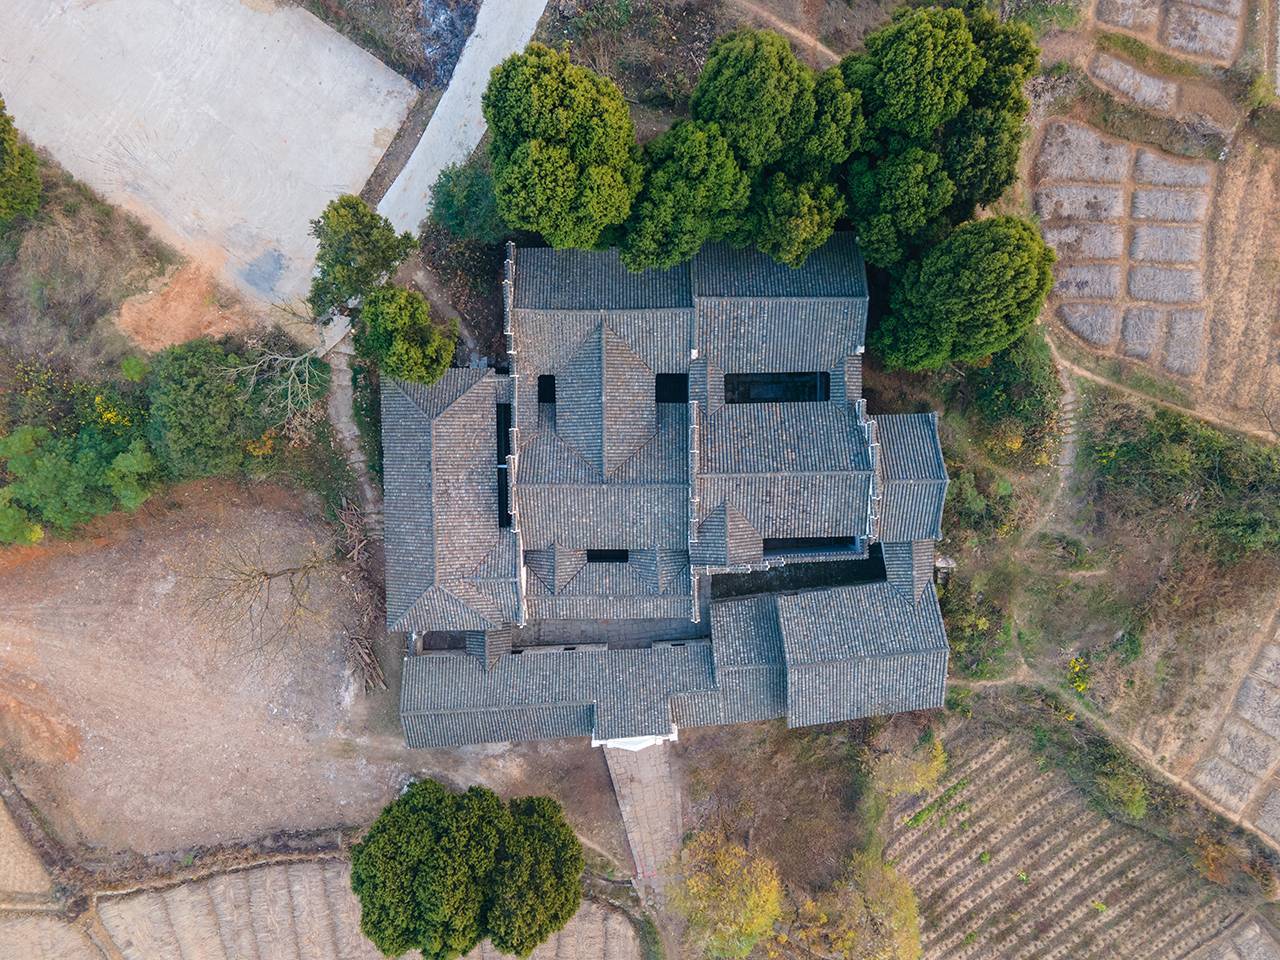 【携程攻略】湖南岳麓书院景点,岳麓书院是古代汉族书院建筑，属于中国历史上著名的四大书院之一。从…